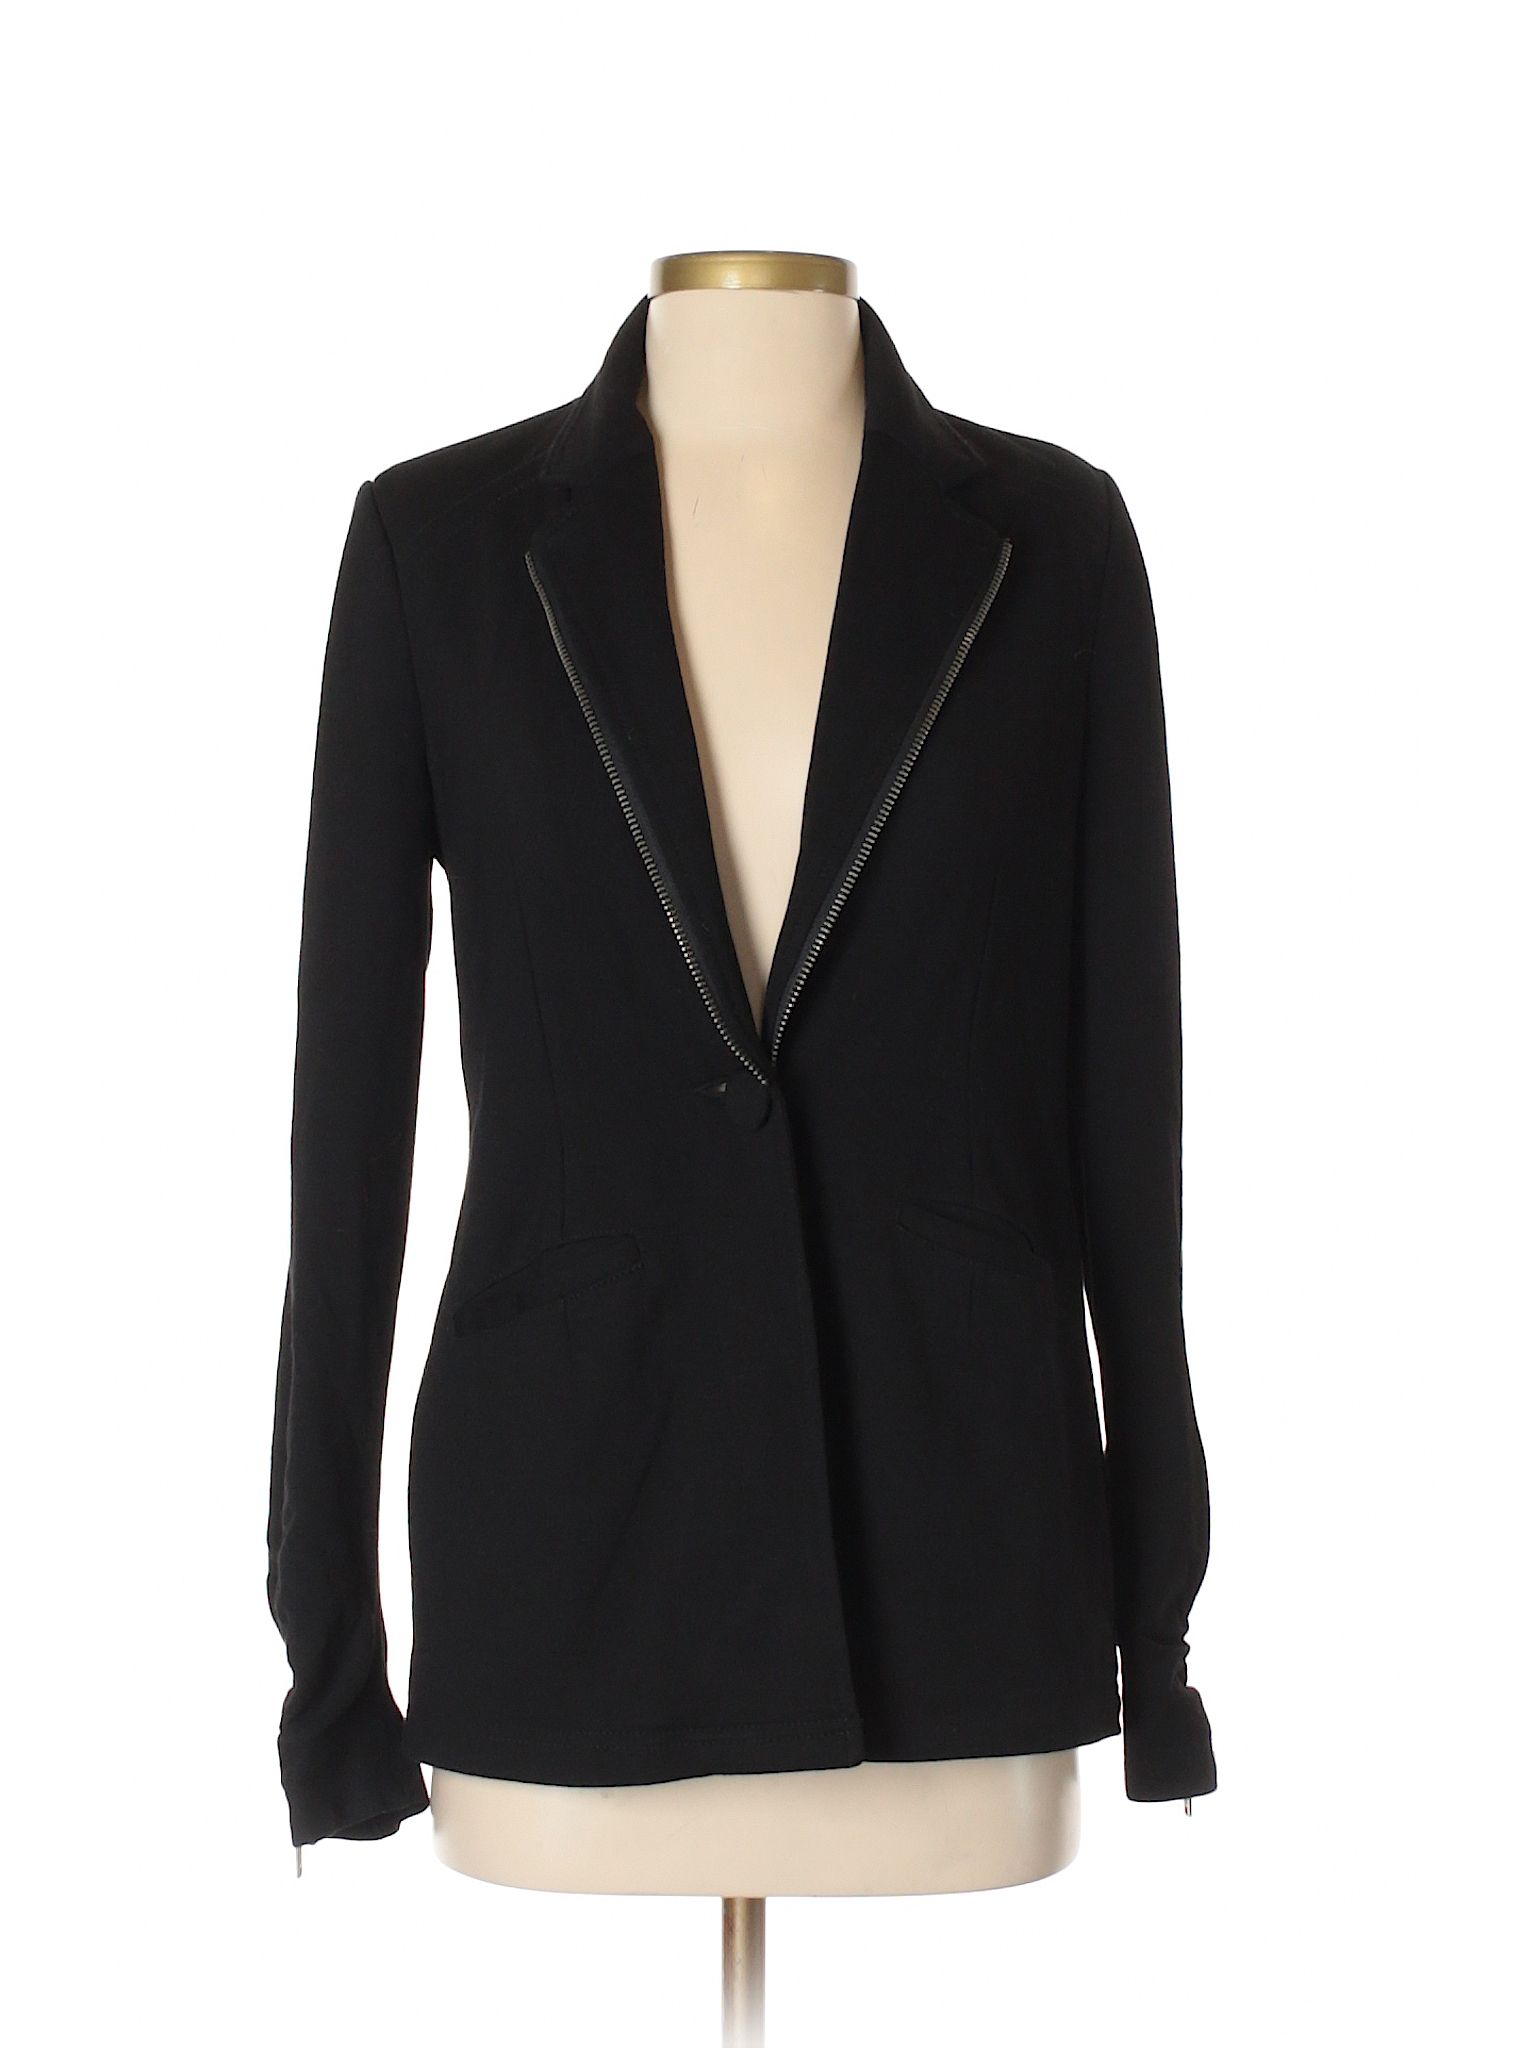 DKNY Jeans Jacket Size 4: Black Women's Jackets & Outerwear - 33075691 | thredUP